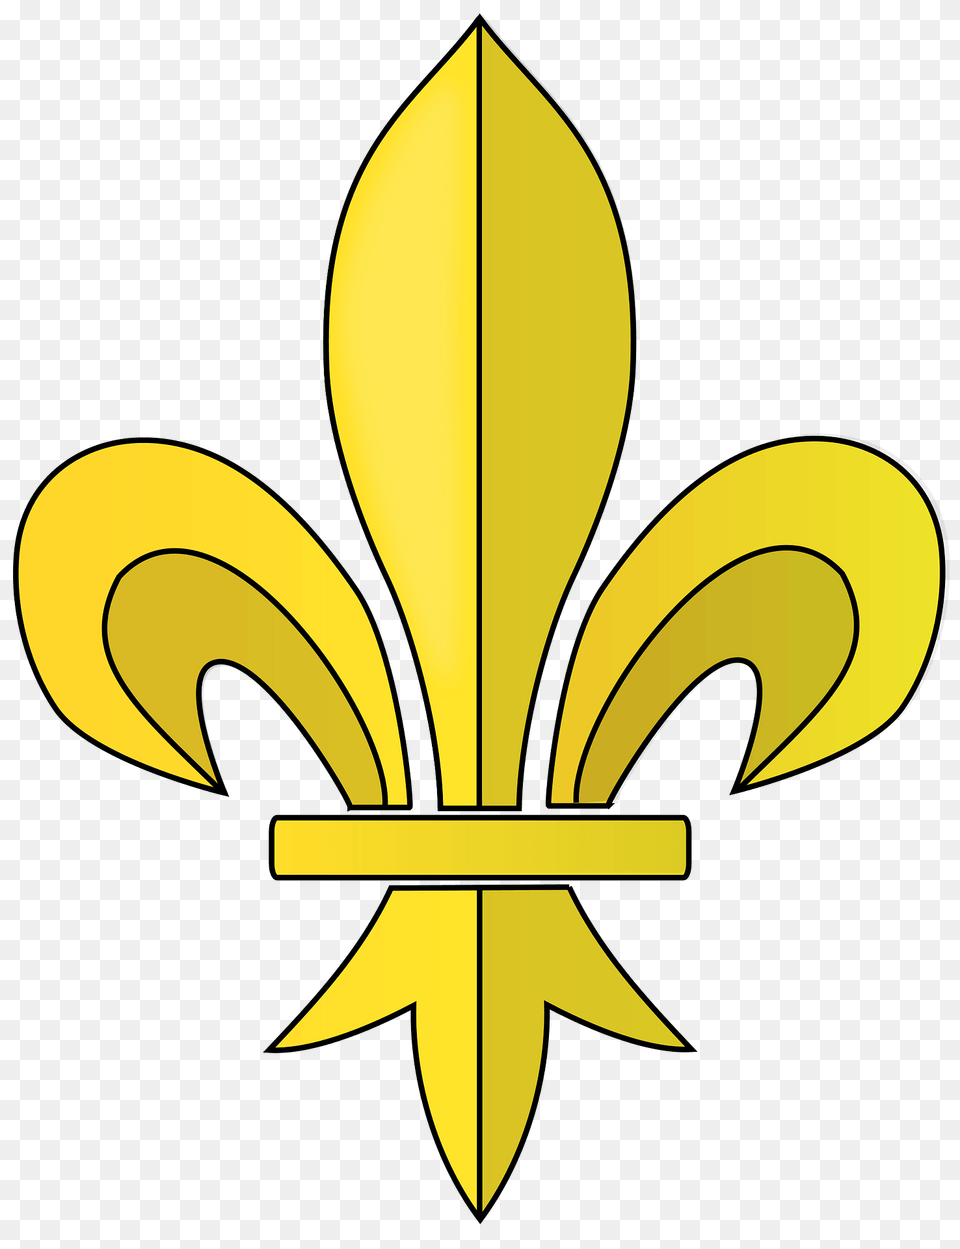 Fleur De Lis Design Clipart, Symbol, Sword, Weapon, Emblem Free Transparent Png